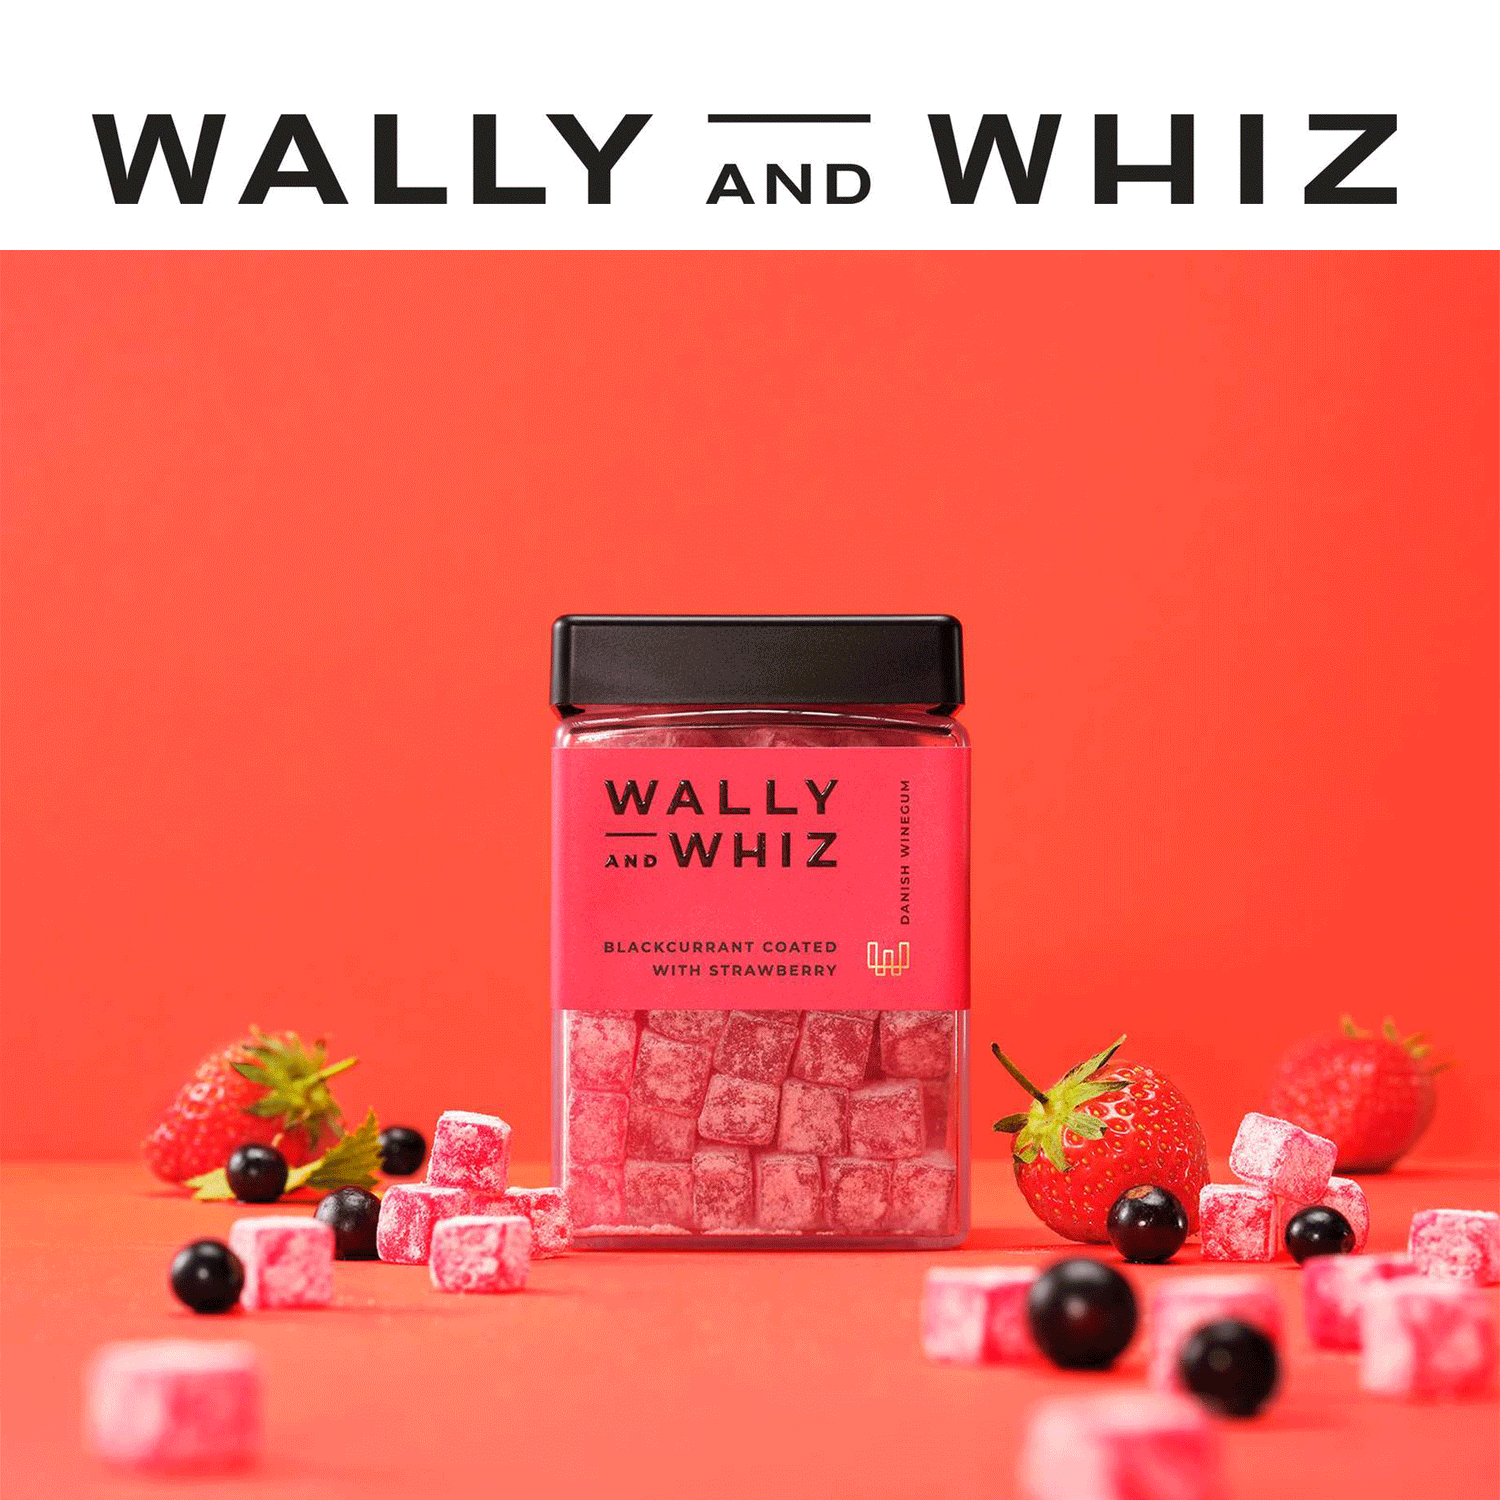 Wally and Whiz - Danish Winegum